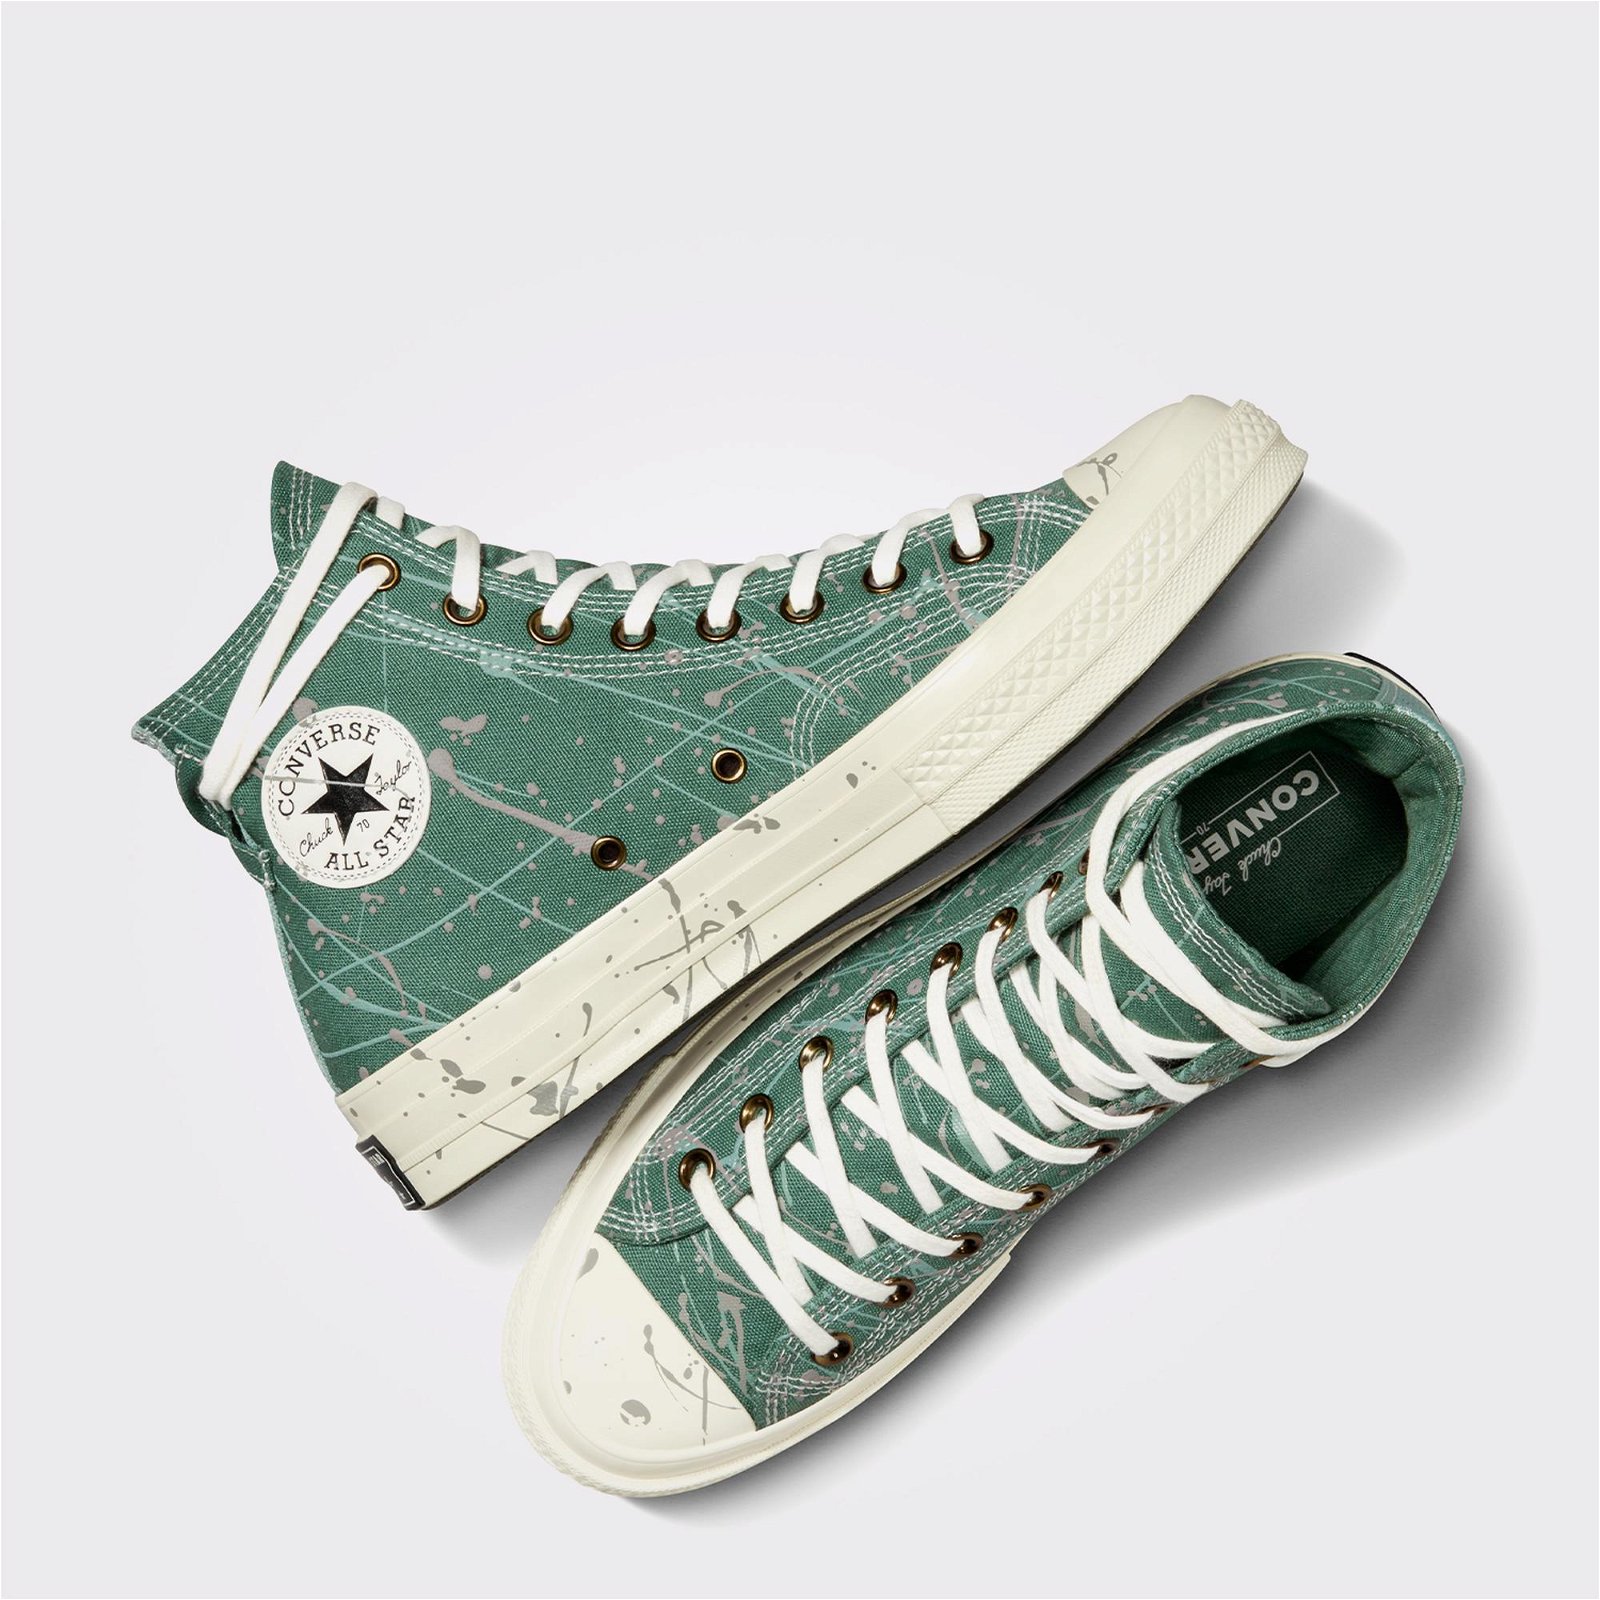 Converse Chuck 70 Paint Splatter Kadın Yeşil Sneaker